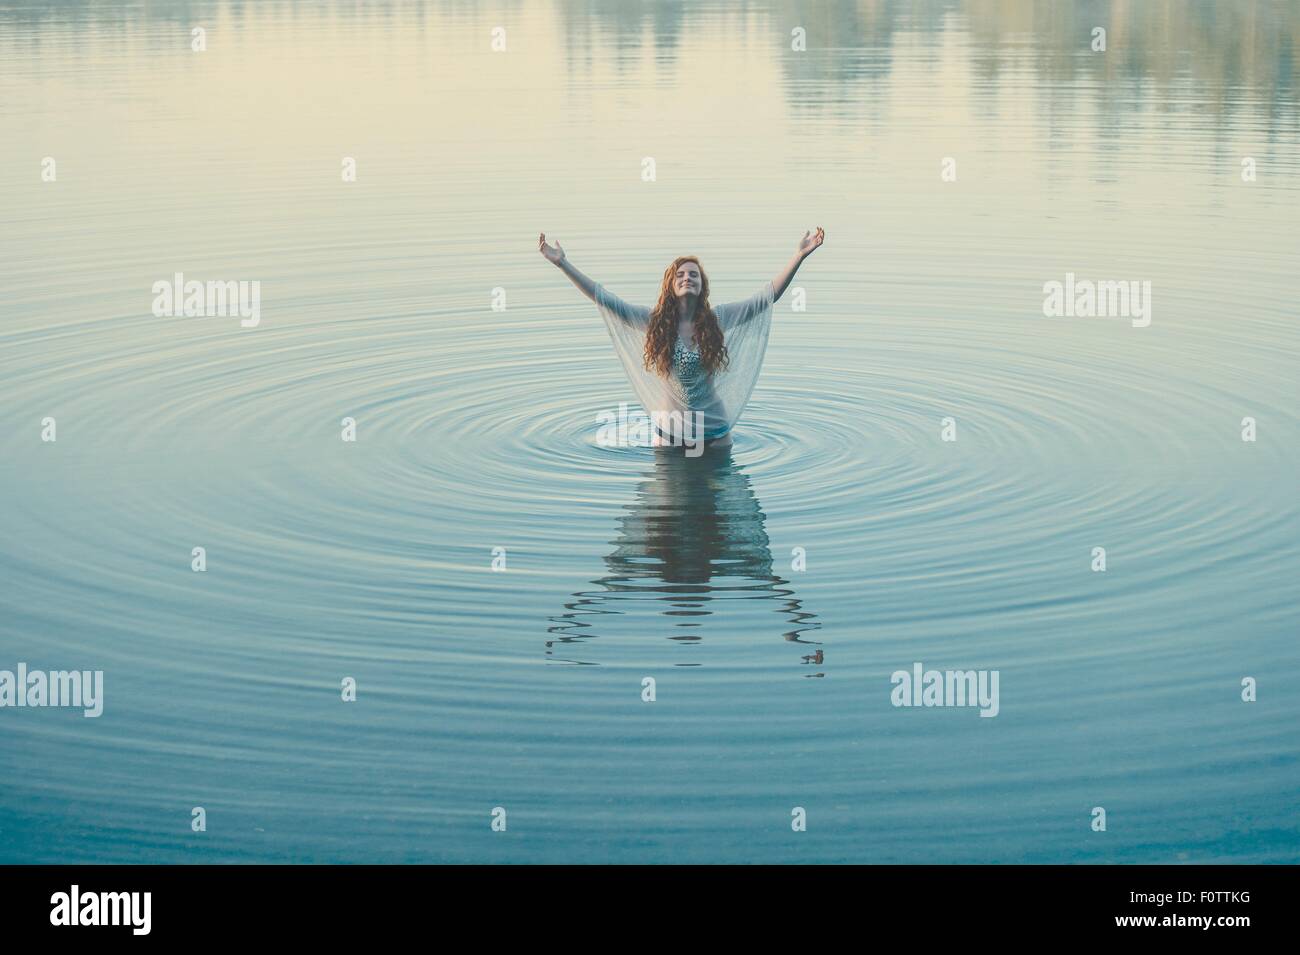 Junge Frau in der Mitte des Sees kräuselt sich mit offenen Armen Stockfoto